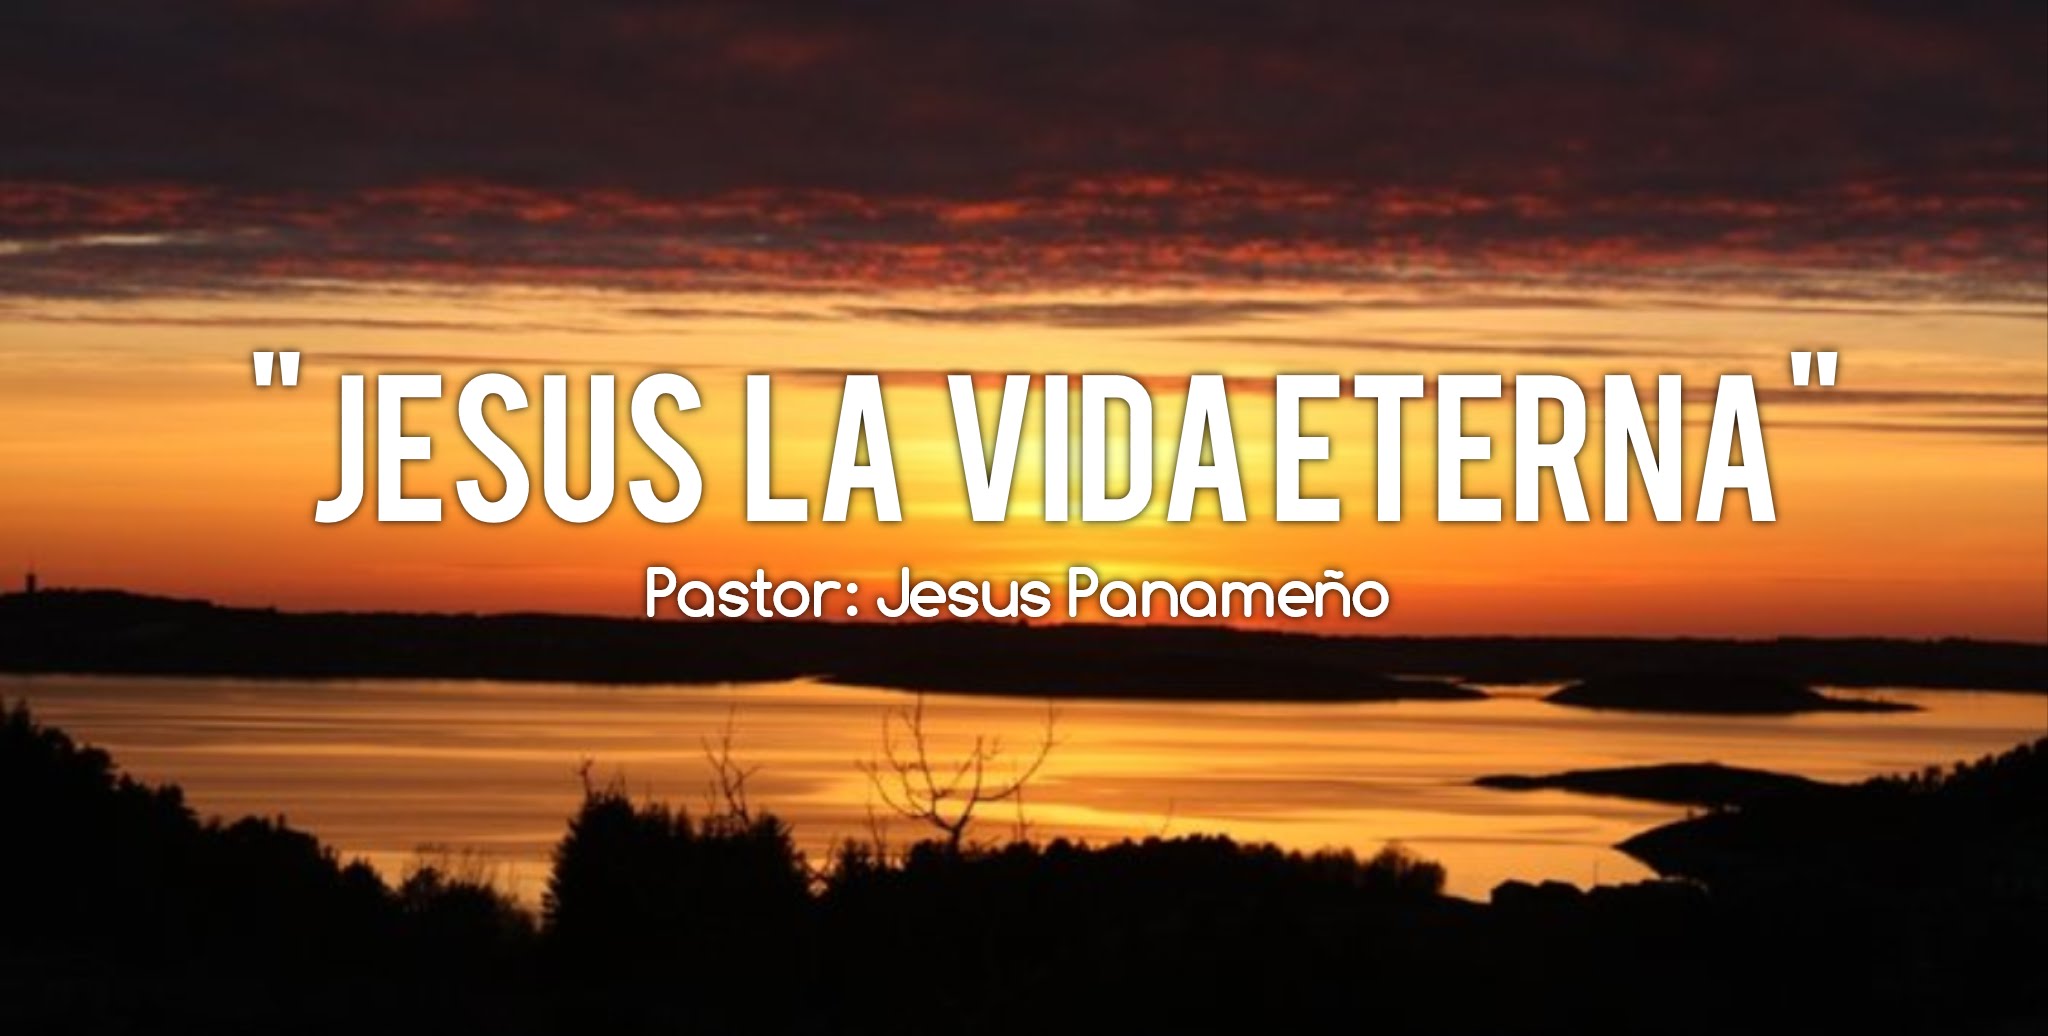 Jesus la vida eterna - pastor Jesus Panameño - YouTube